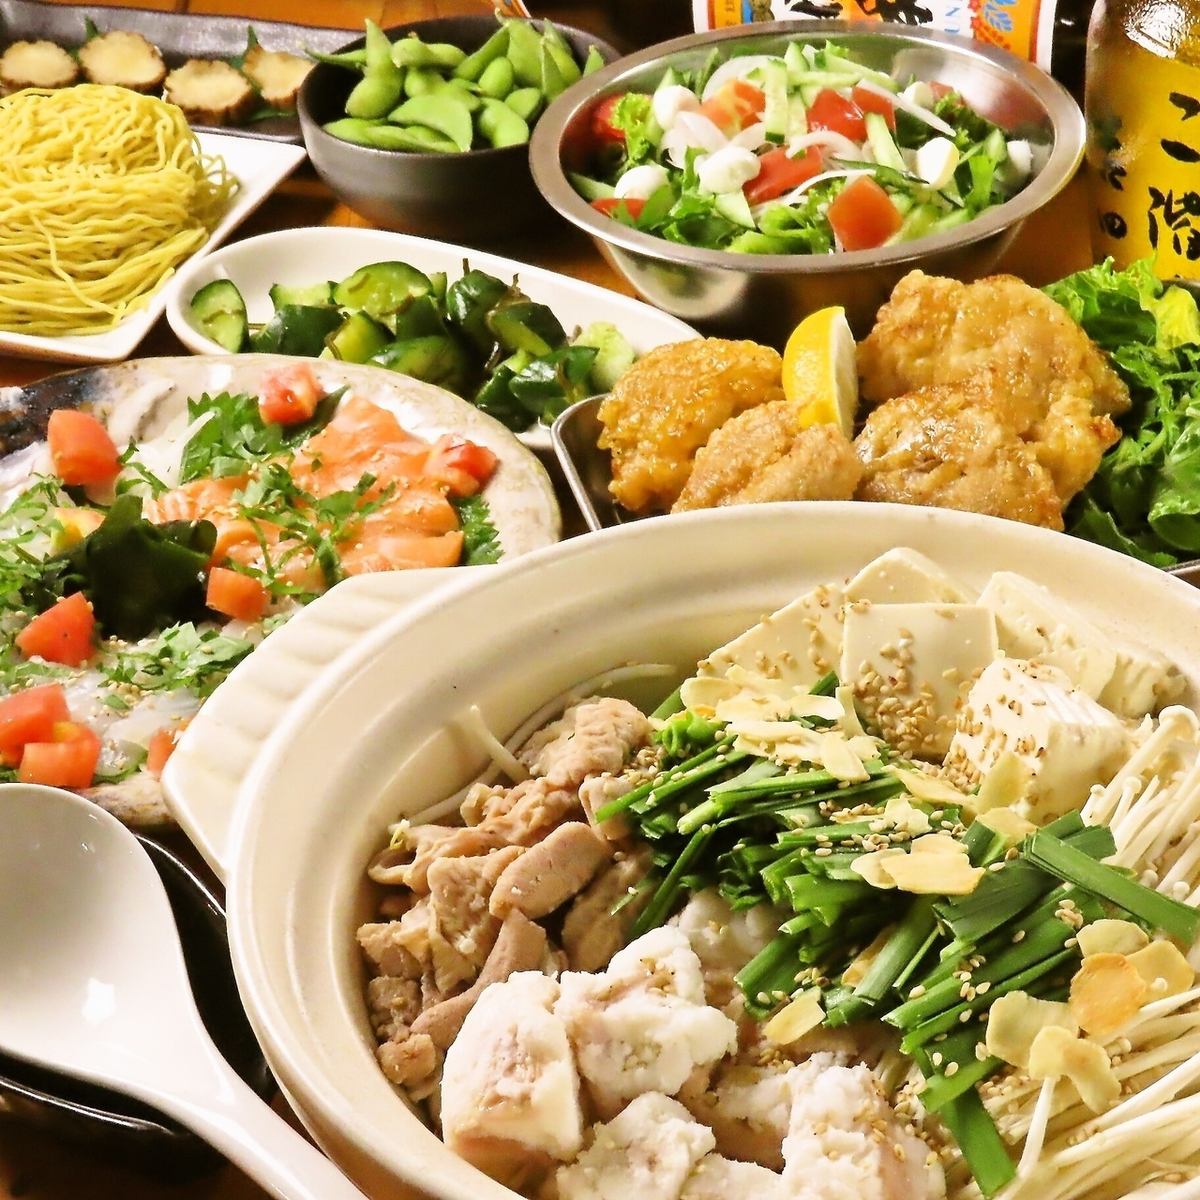 厨师引以为傲的“大津锅”和“相扑火锅”是从食材中严格挑选的。